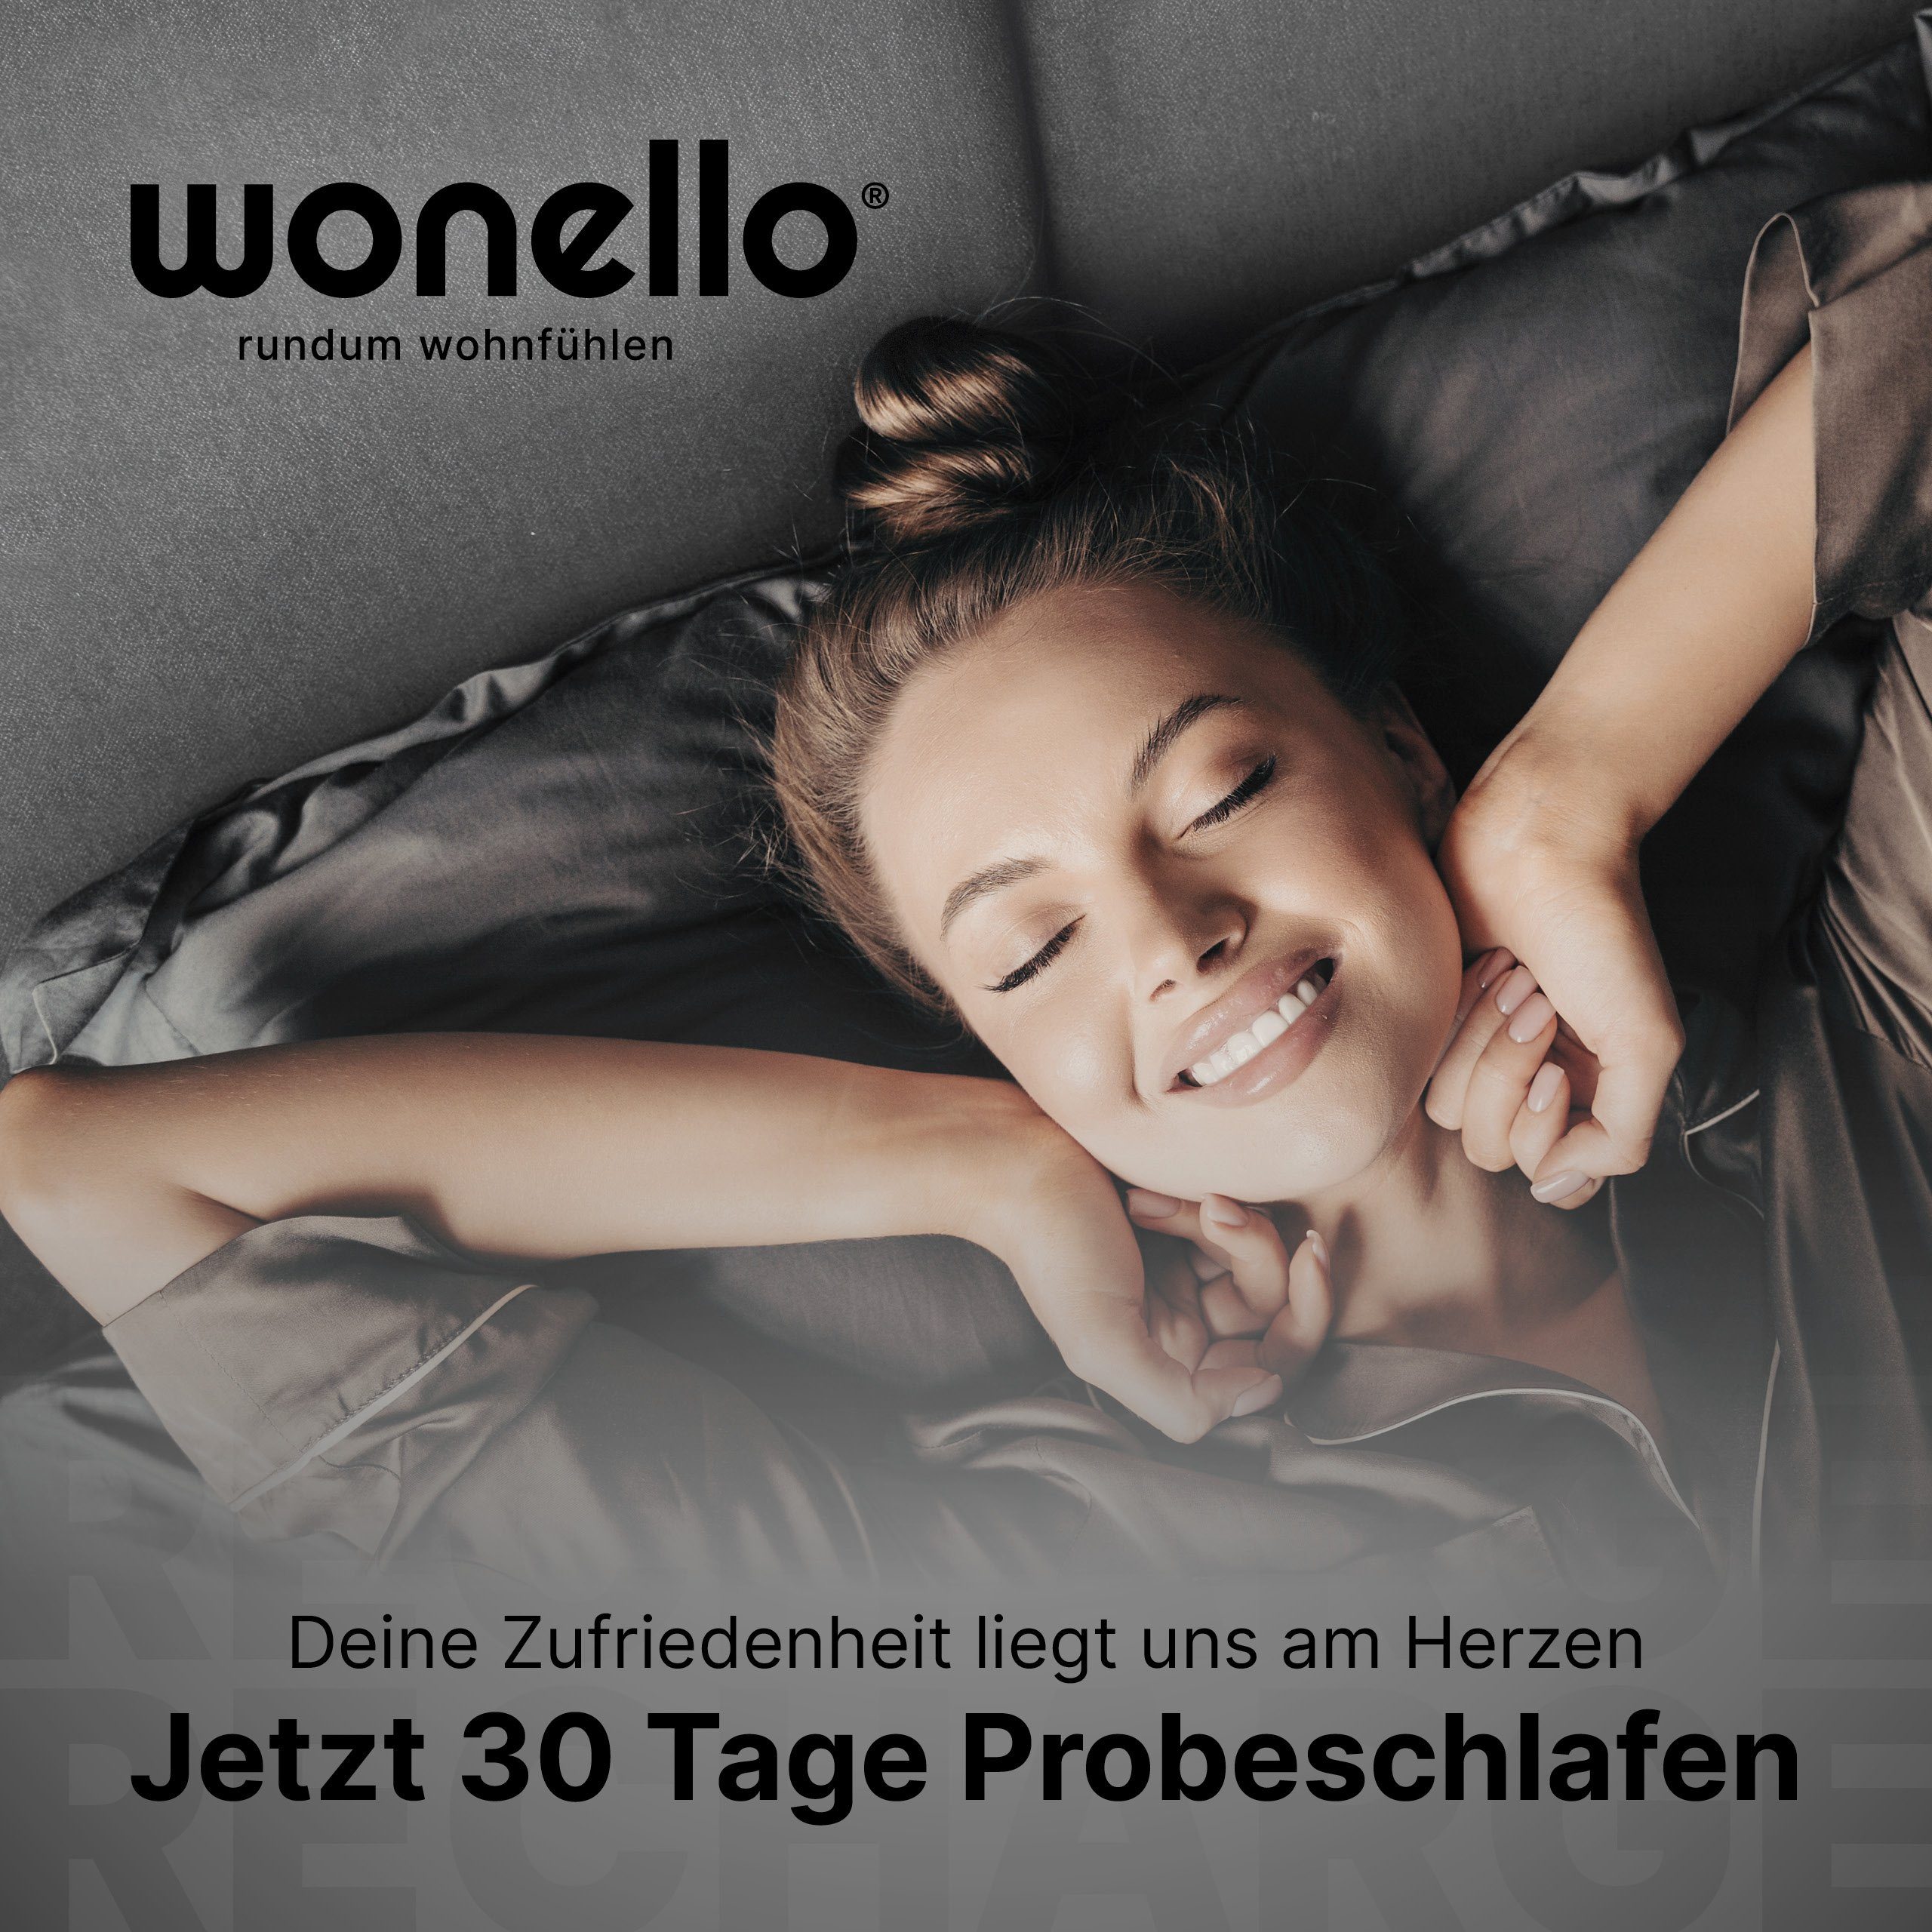 Topper RECHARGE, wonello, 6 cm 160x200cm, in Germany, waschbar druckentlastender bei 60°C Gelschaum, (Made Matratzentopper GEL), hoch